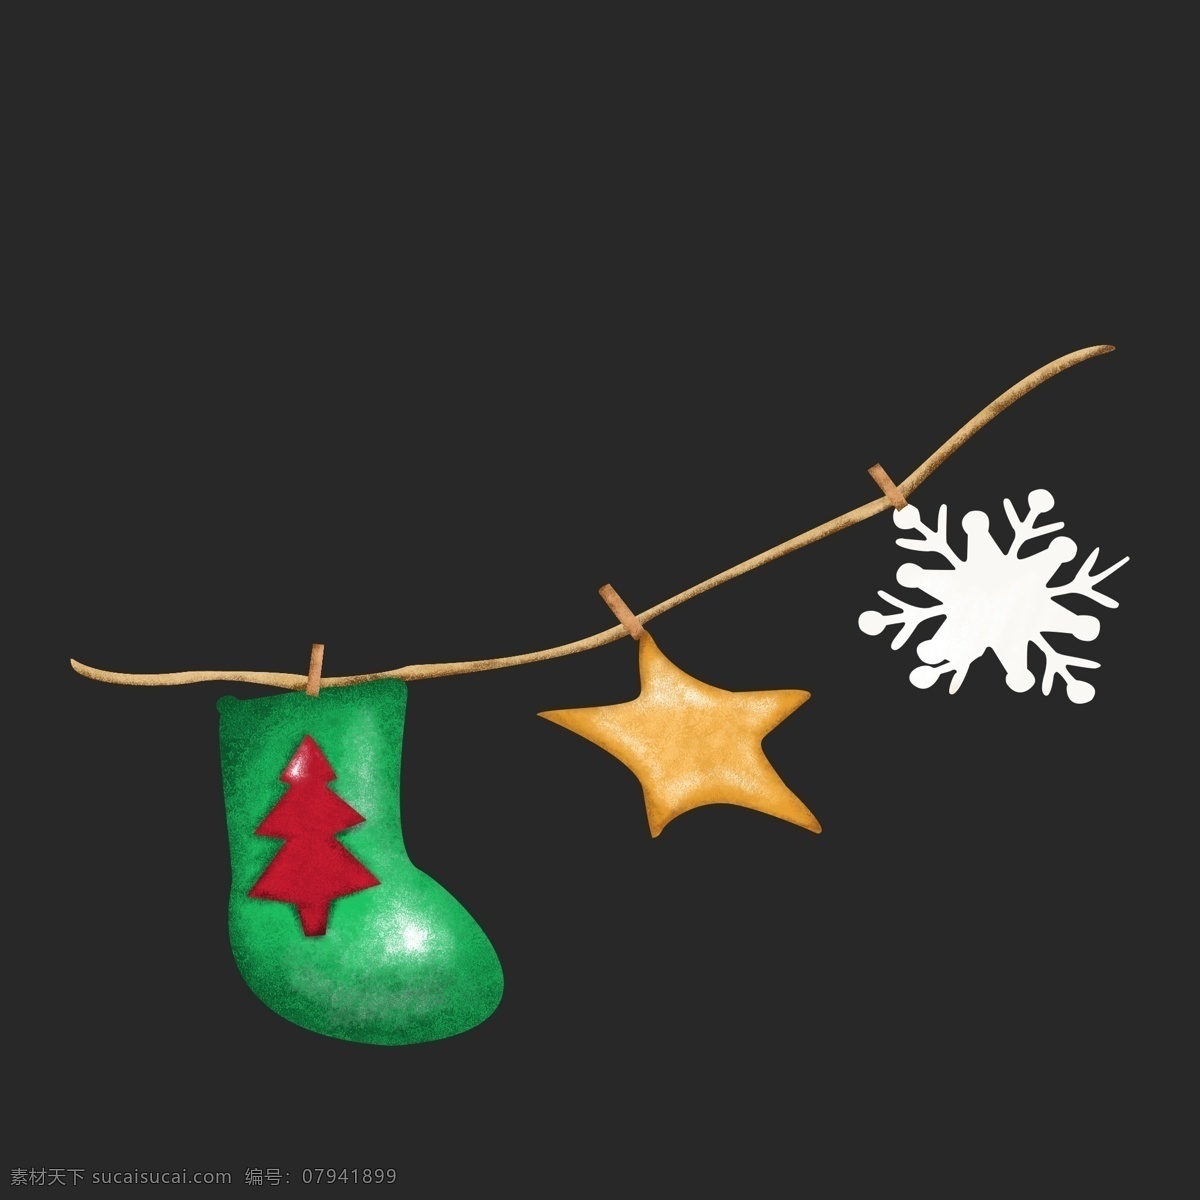 圣诞节 挂件 挂饰 装饰 节日 气氛 装扮 手绘 写实 喜庆 欢乐 开心 美好 冬季 圣诞袜 星星